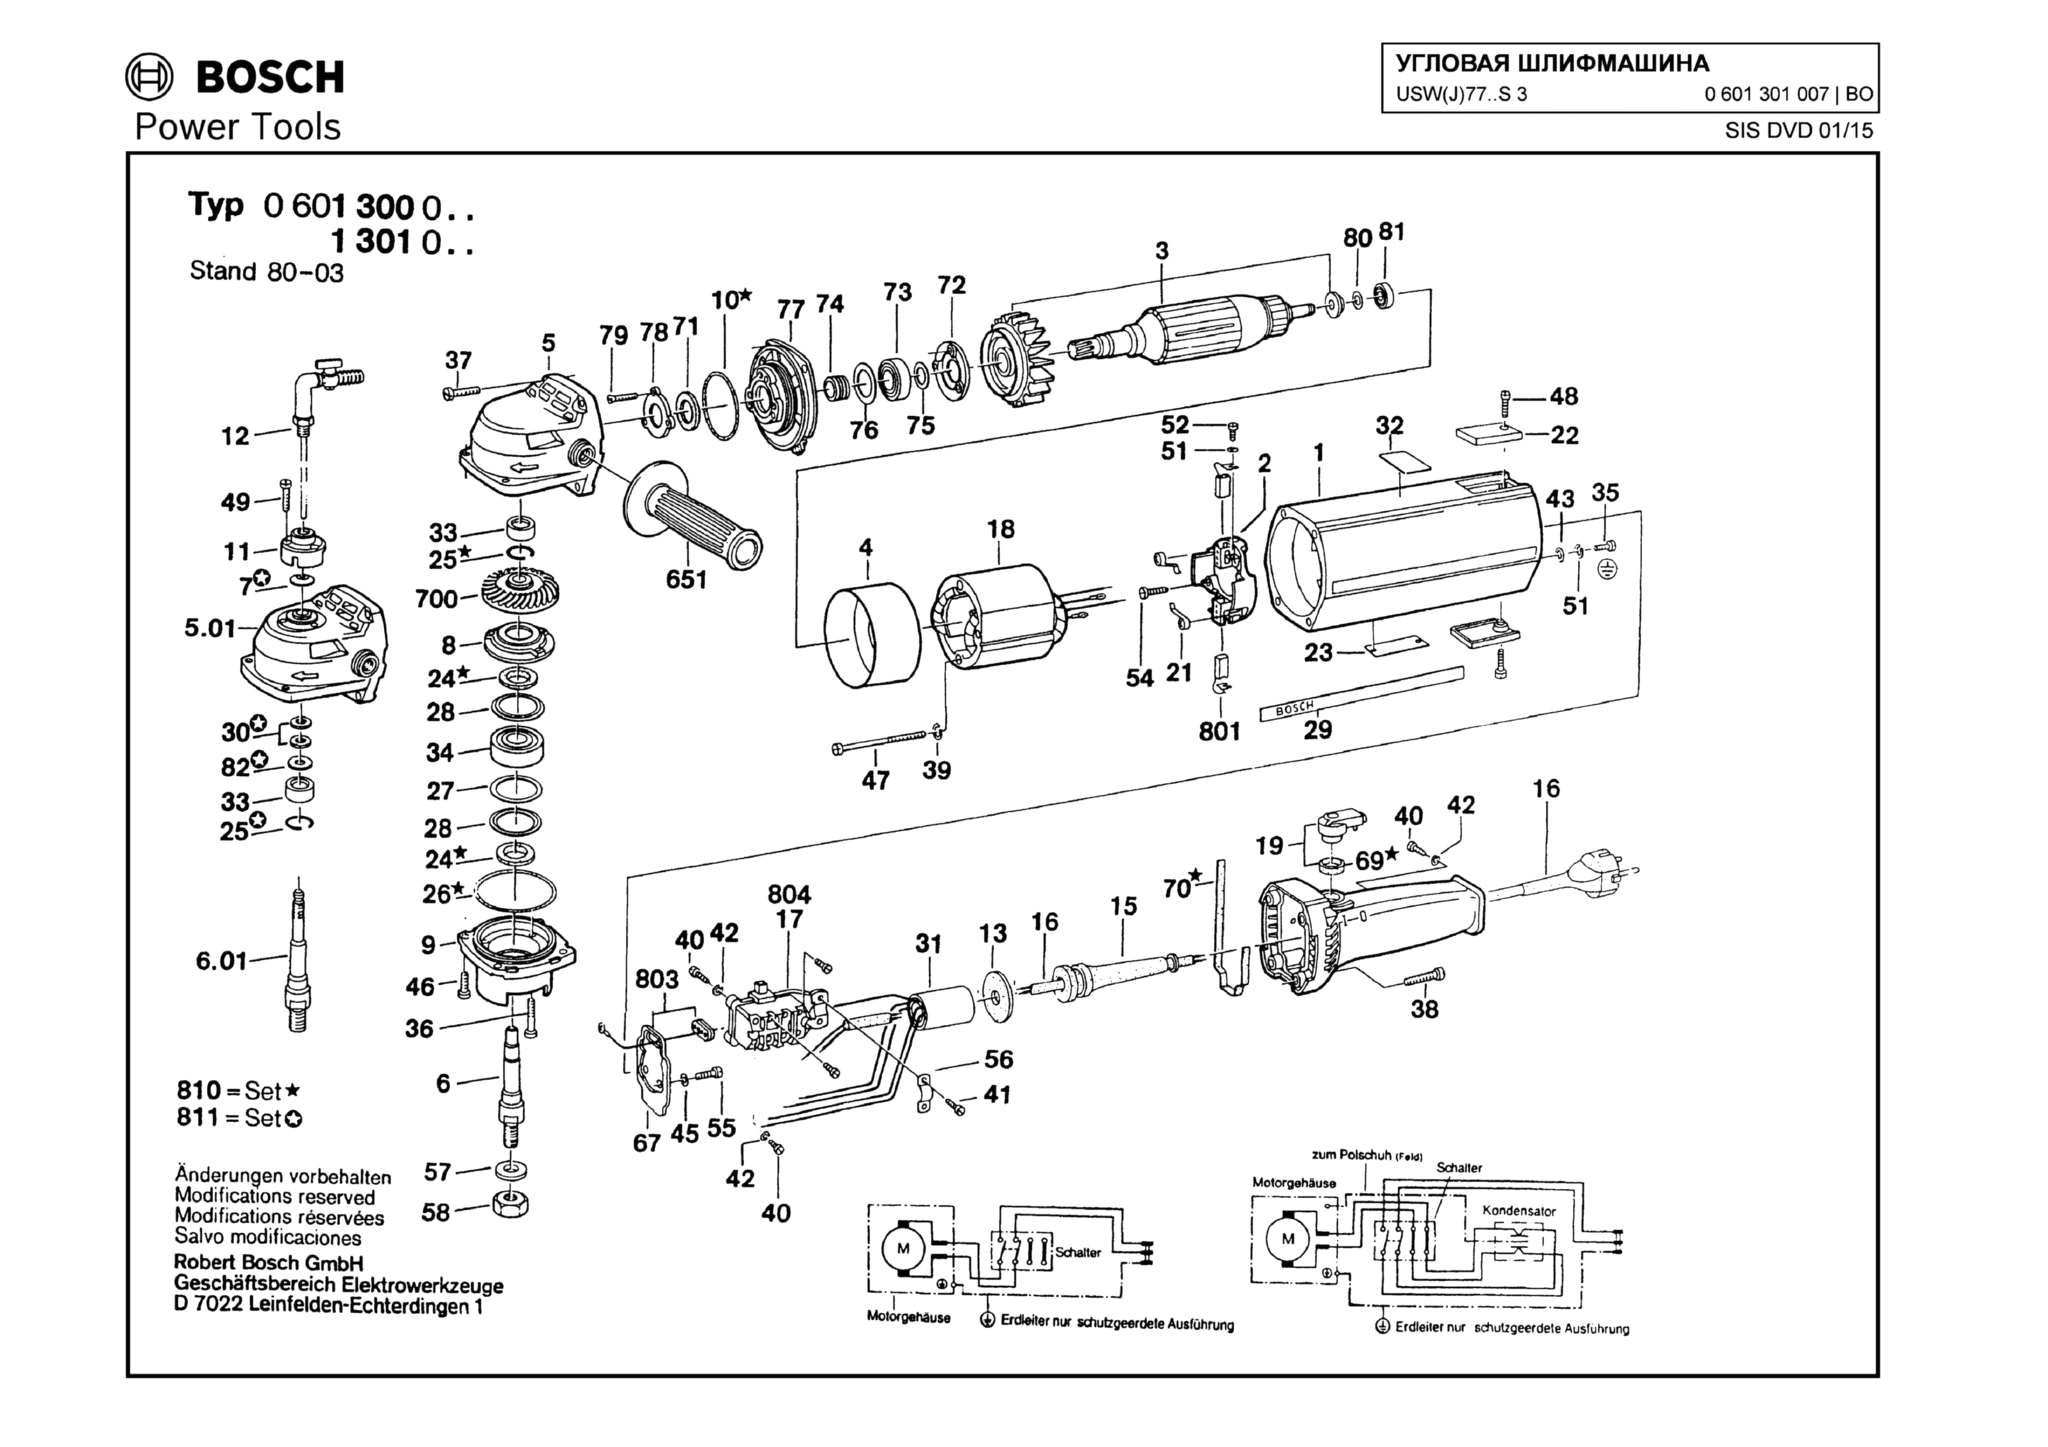 Запчасти, схема и деталировка Bosch USW(J)77..S 3 (ТИП 0601301007)